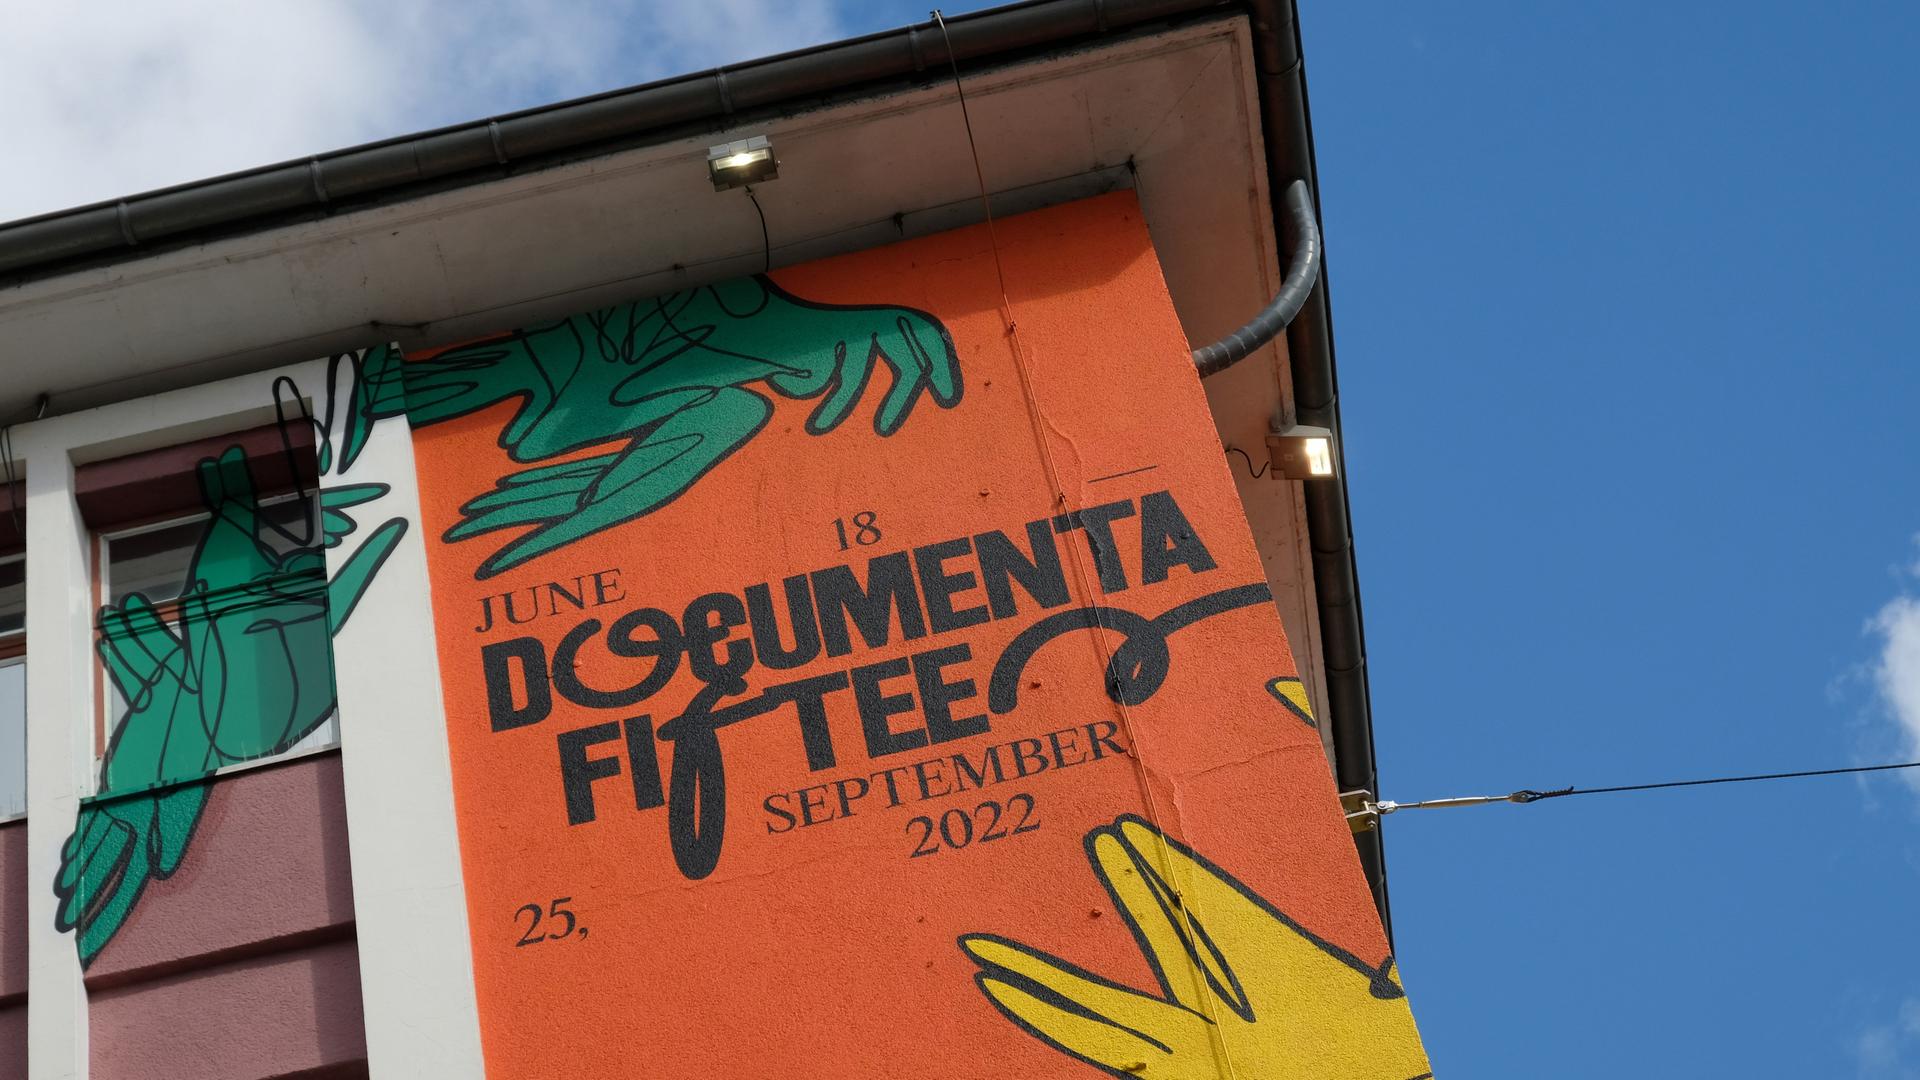 Der Schriftzug "documenta fifteen" und das Logo vom indonesischen Kuratorenkollektiv Ruangrupa prangt an der Fassade eines ehemaligen Sportgeschäftes in der Kasseler Innenstadt.